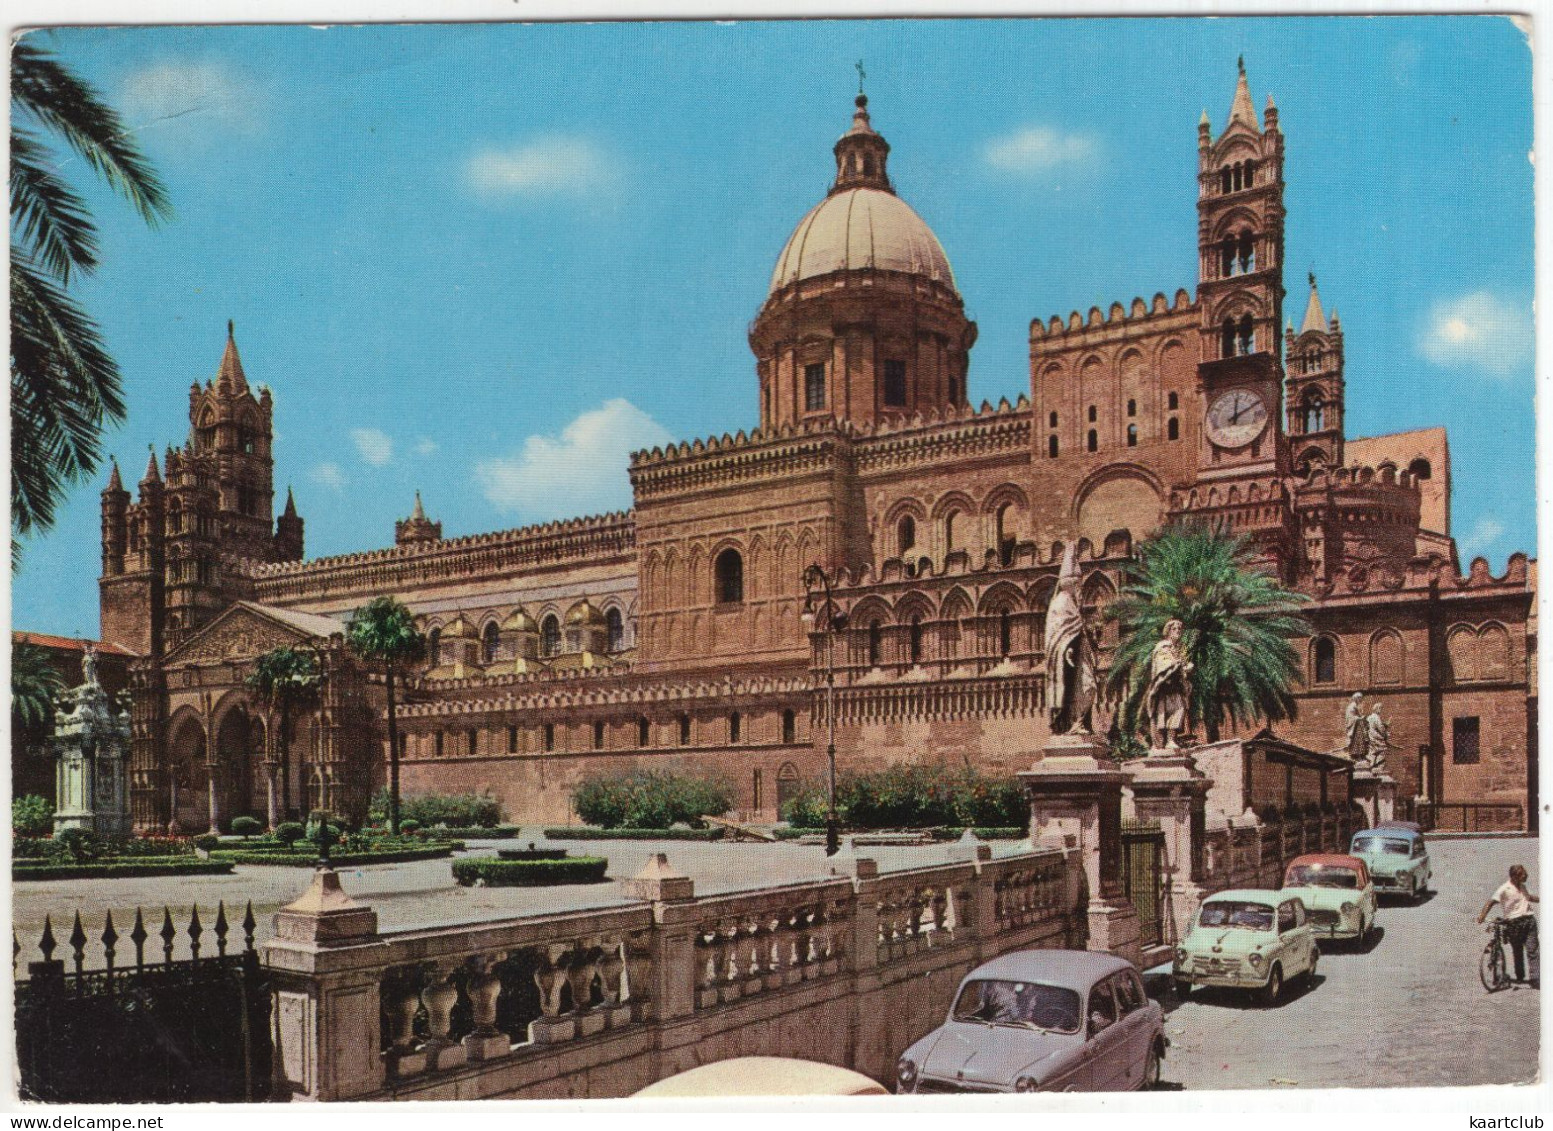 Palermo: FIAT 1100, 600, 1100-103, 1400 - La Cattedrale - (Italia) - Turismo